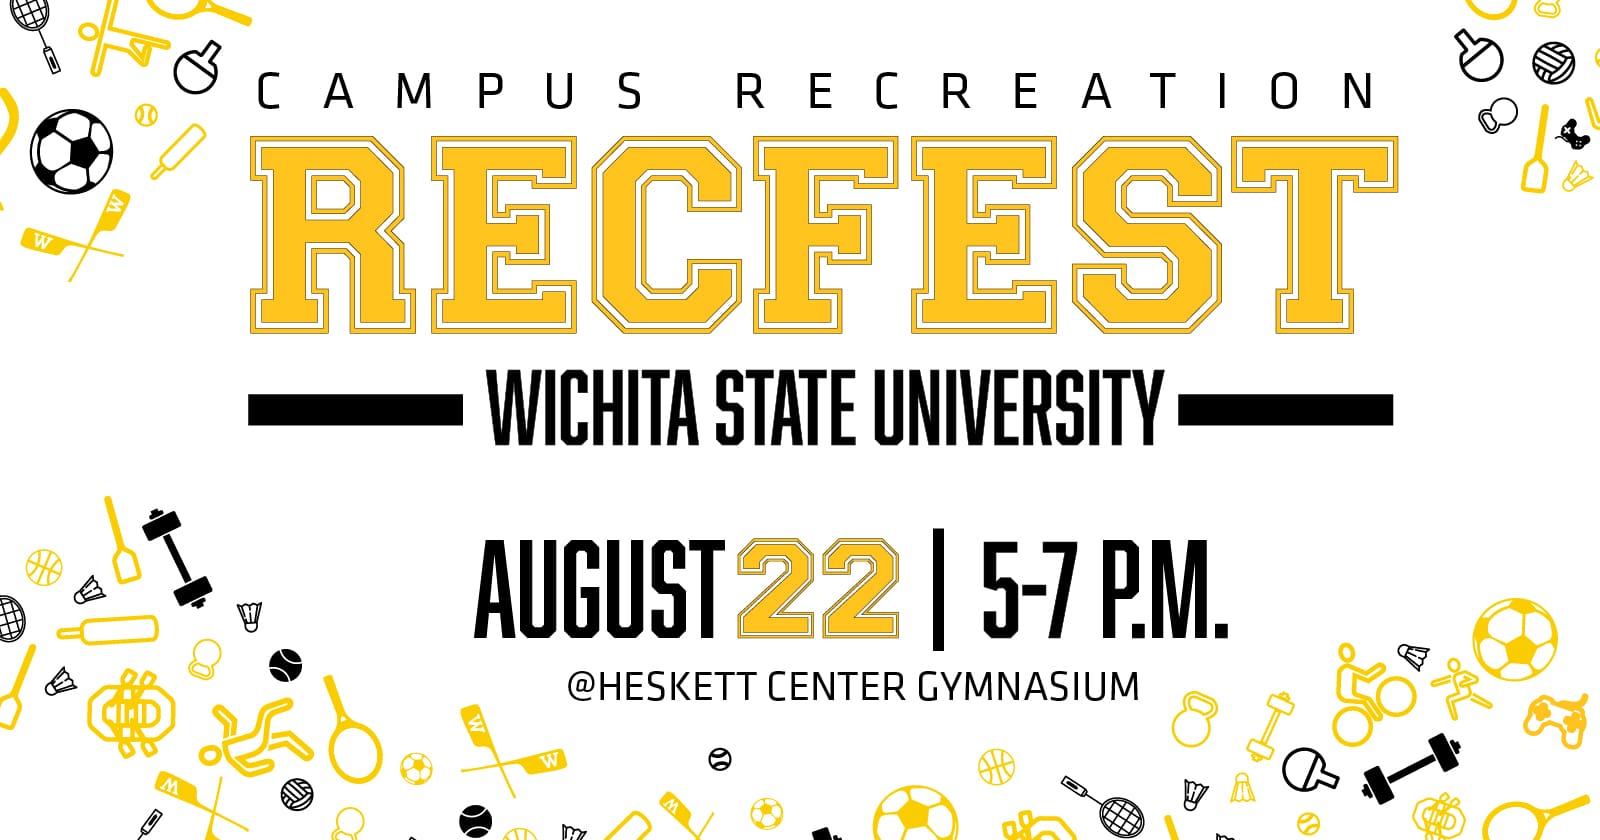 Campus Recreation RecFest Wichita State University August 22 5-7 pm @Heskett Center Gymnasium